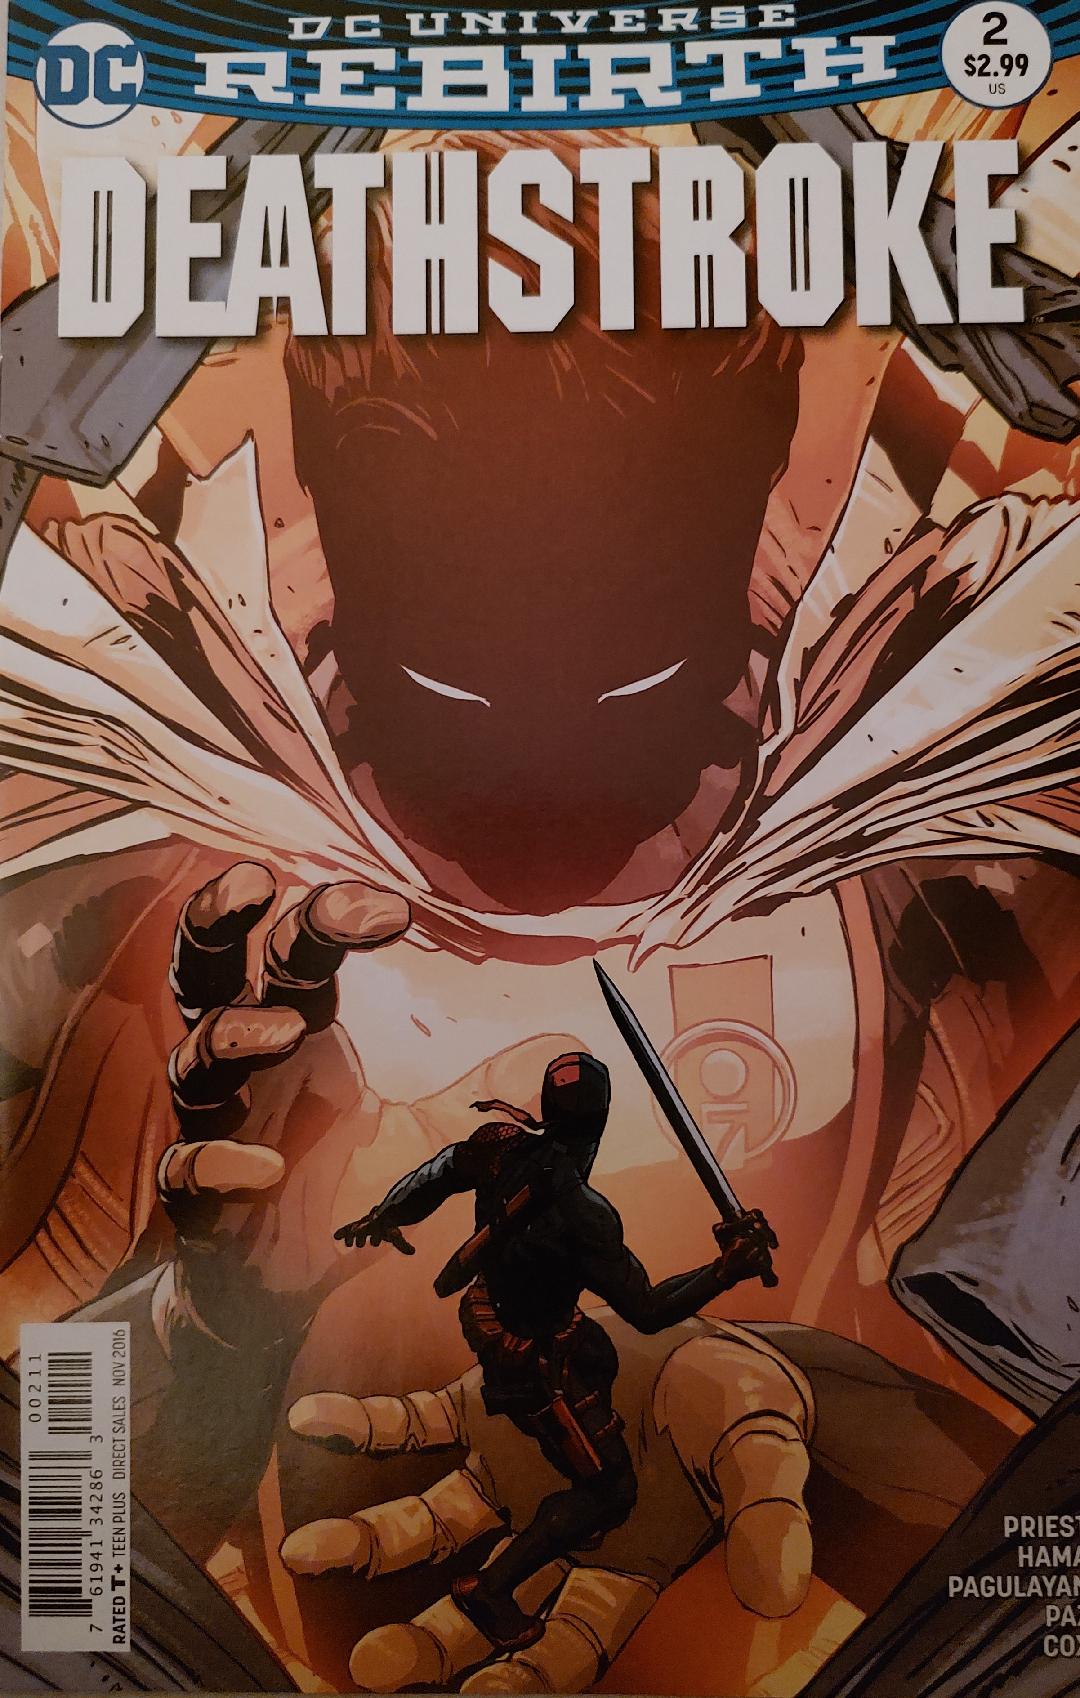 Deathstroke #2 Rebirth DC Universe Comic Book Cover